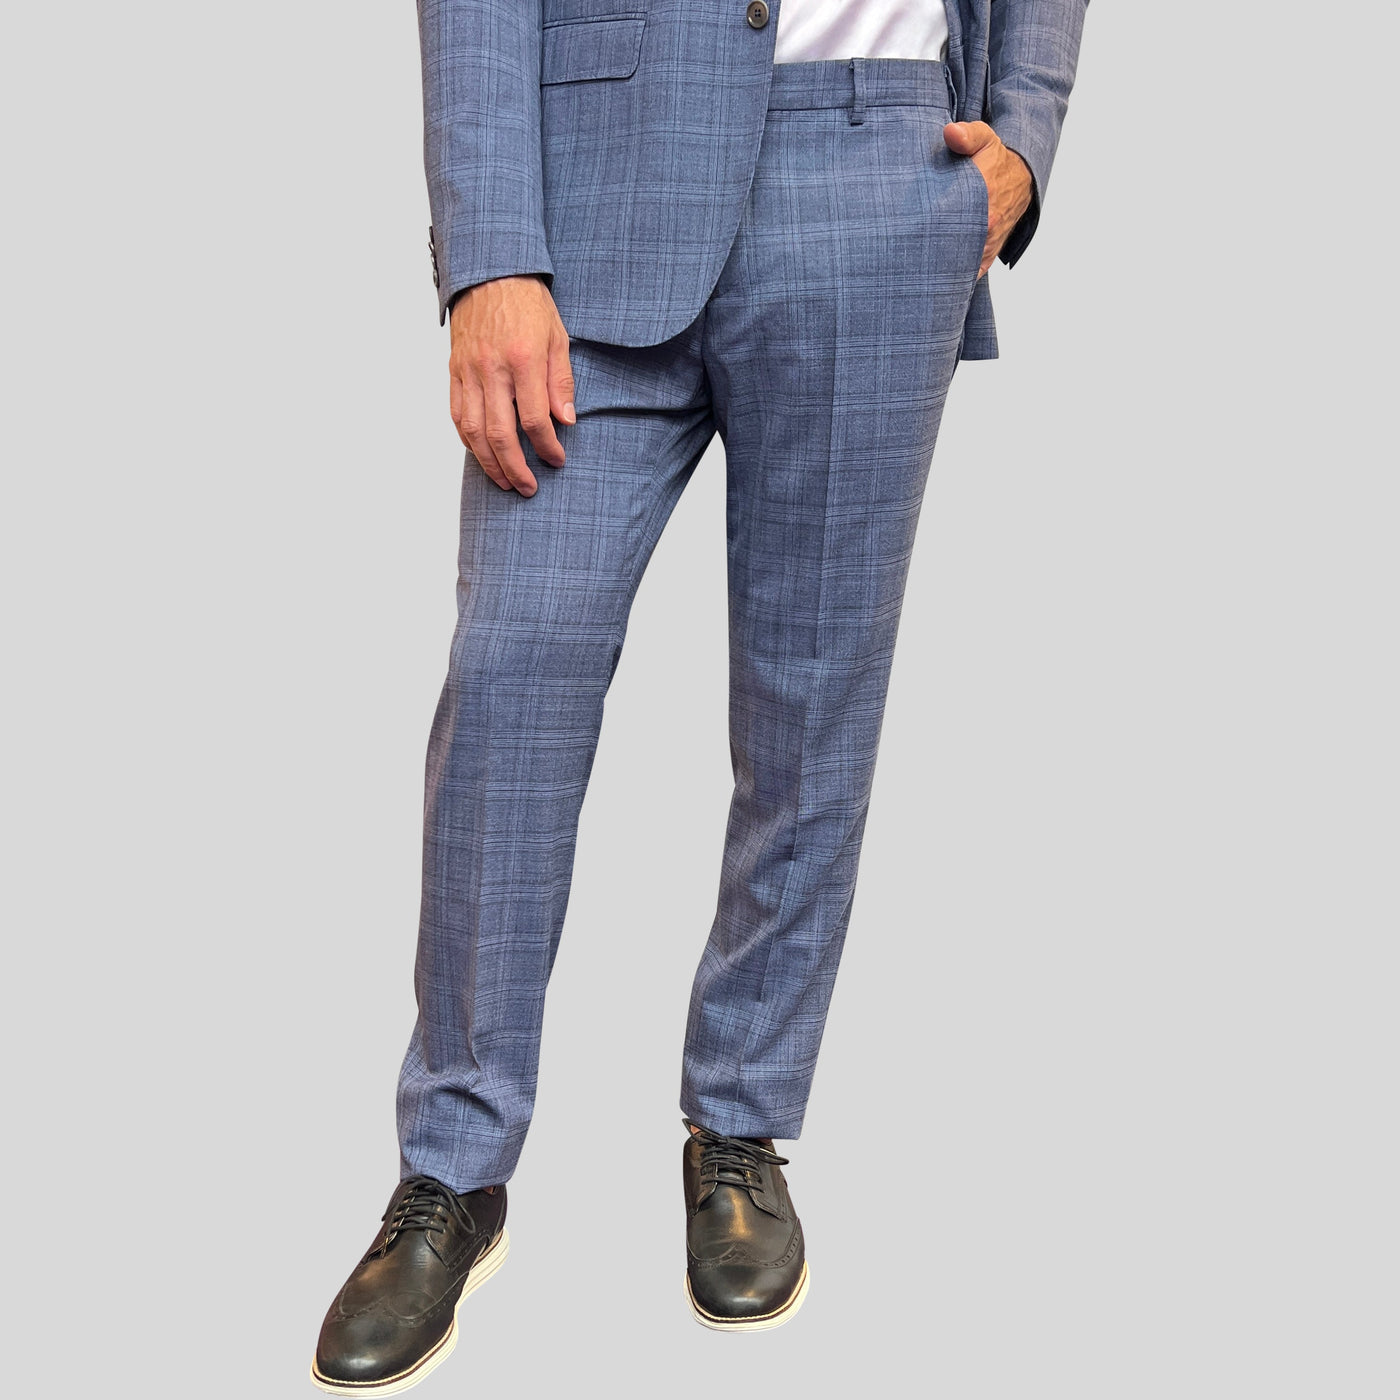 Gotstyle Fashion - Pal Zileri Suits Plaid Check Wool Blend Suit - Blue